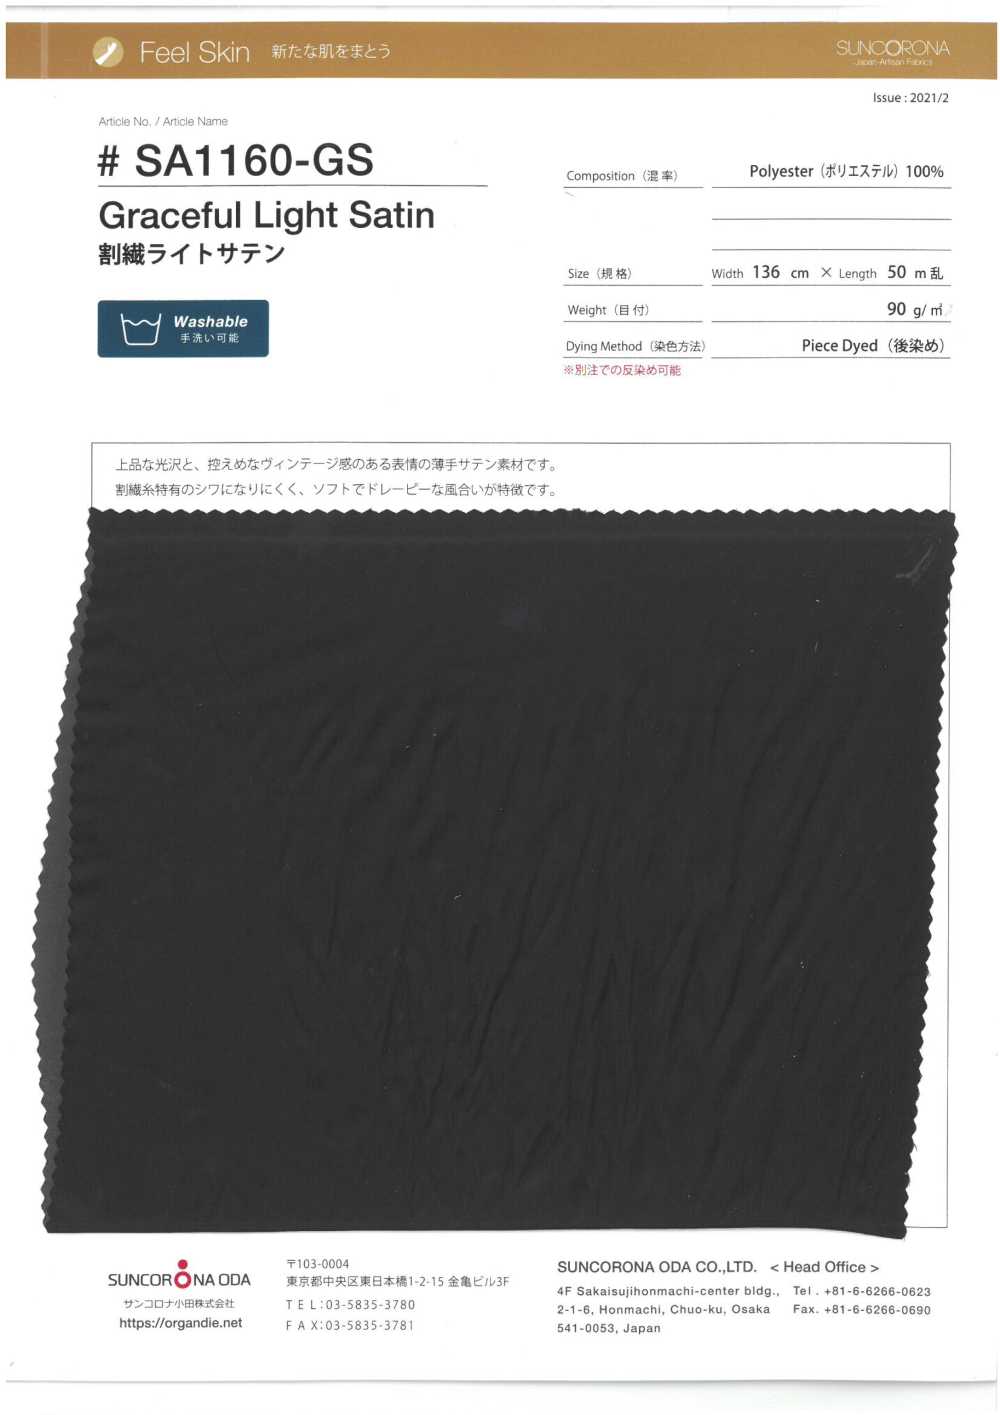 SA1160-GS Gespaltene Faser, Heller Satin[Textilgewebe] Suncorona Oda